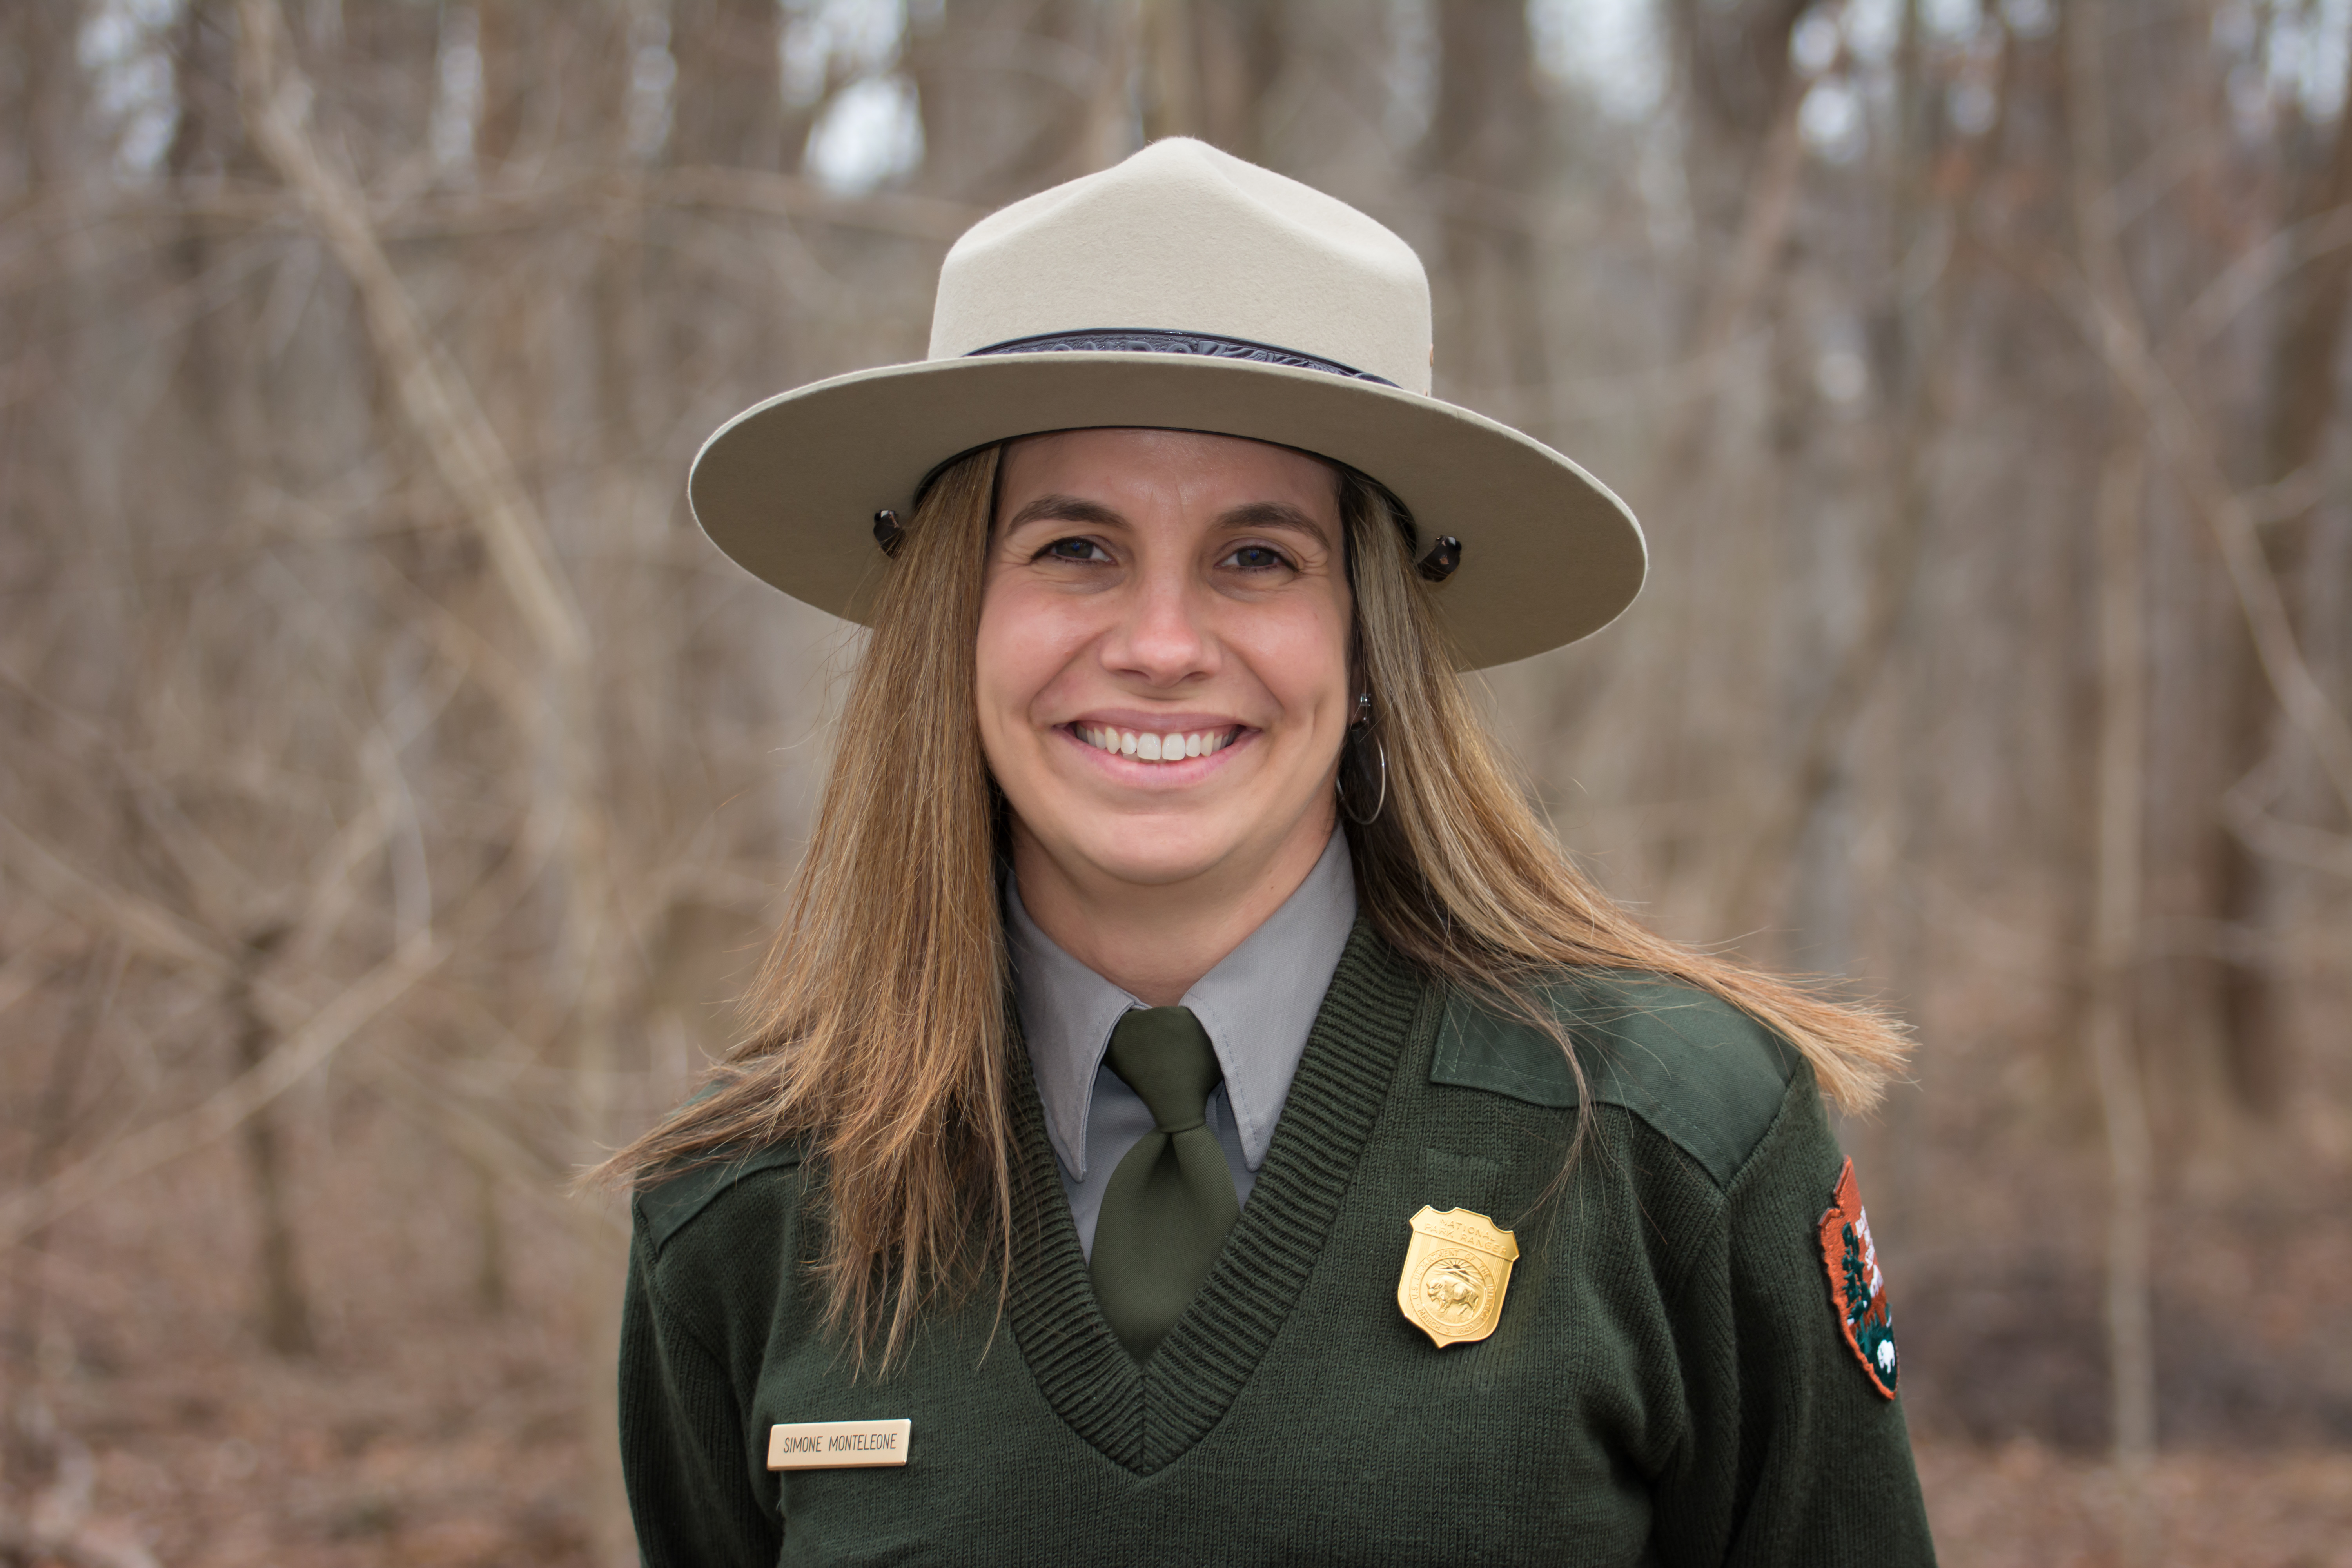 A woman in a Park Service uniform